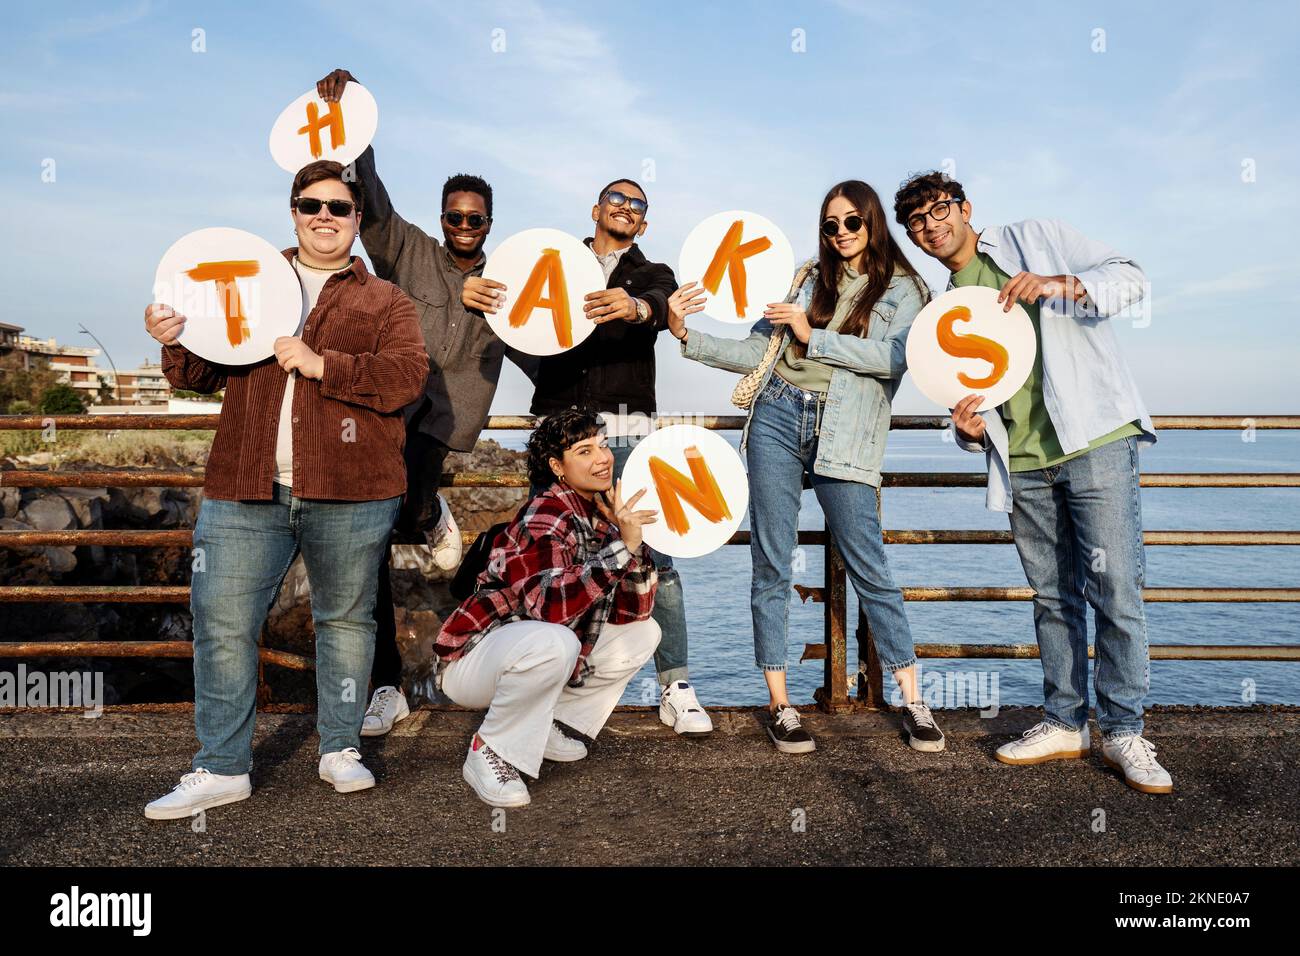 Das Porträt einer positiven Gruppe multiethnischer Jugendlicher vermittelt eine Dankesbotschaft mit dem Wort "danke", handgeschrieben in Großbuchstaben Stockfoto